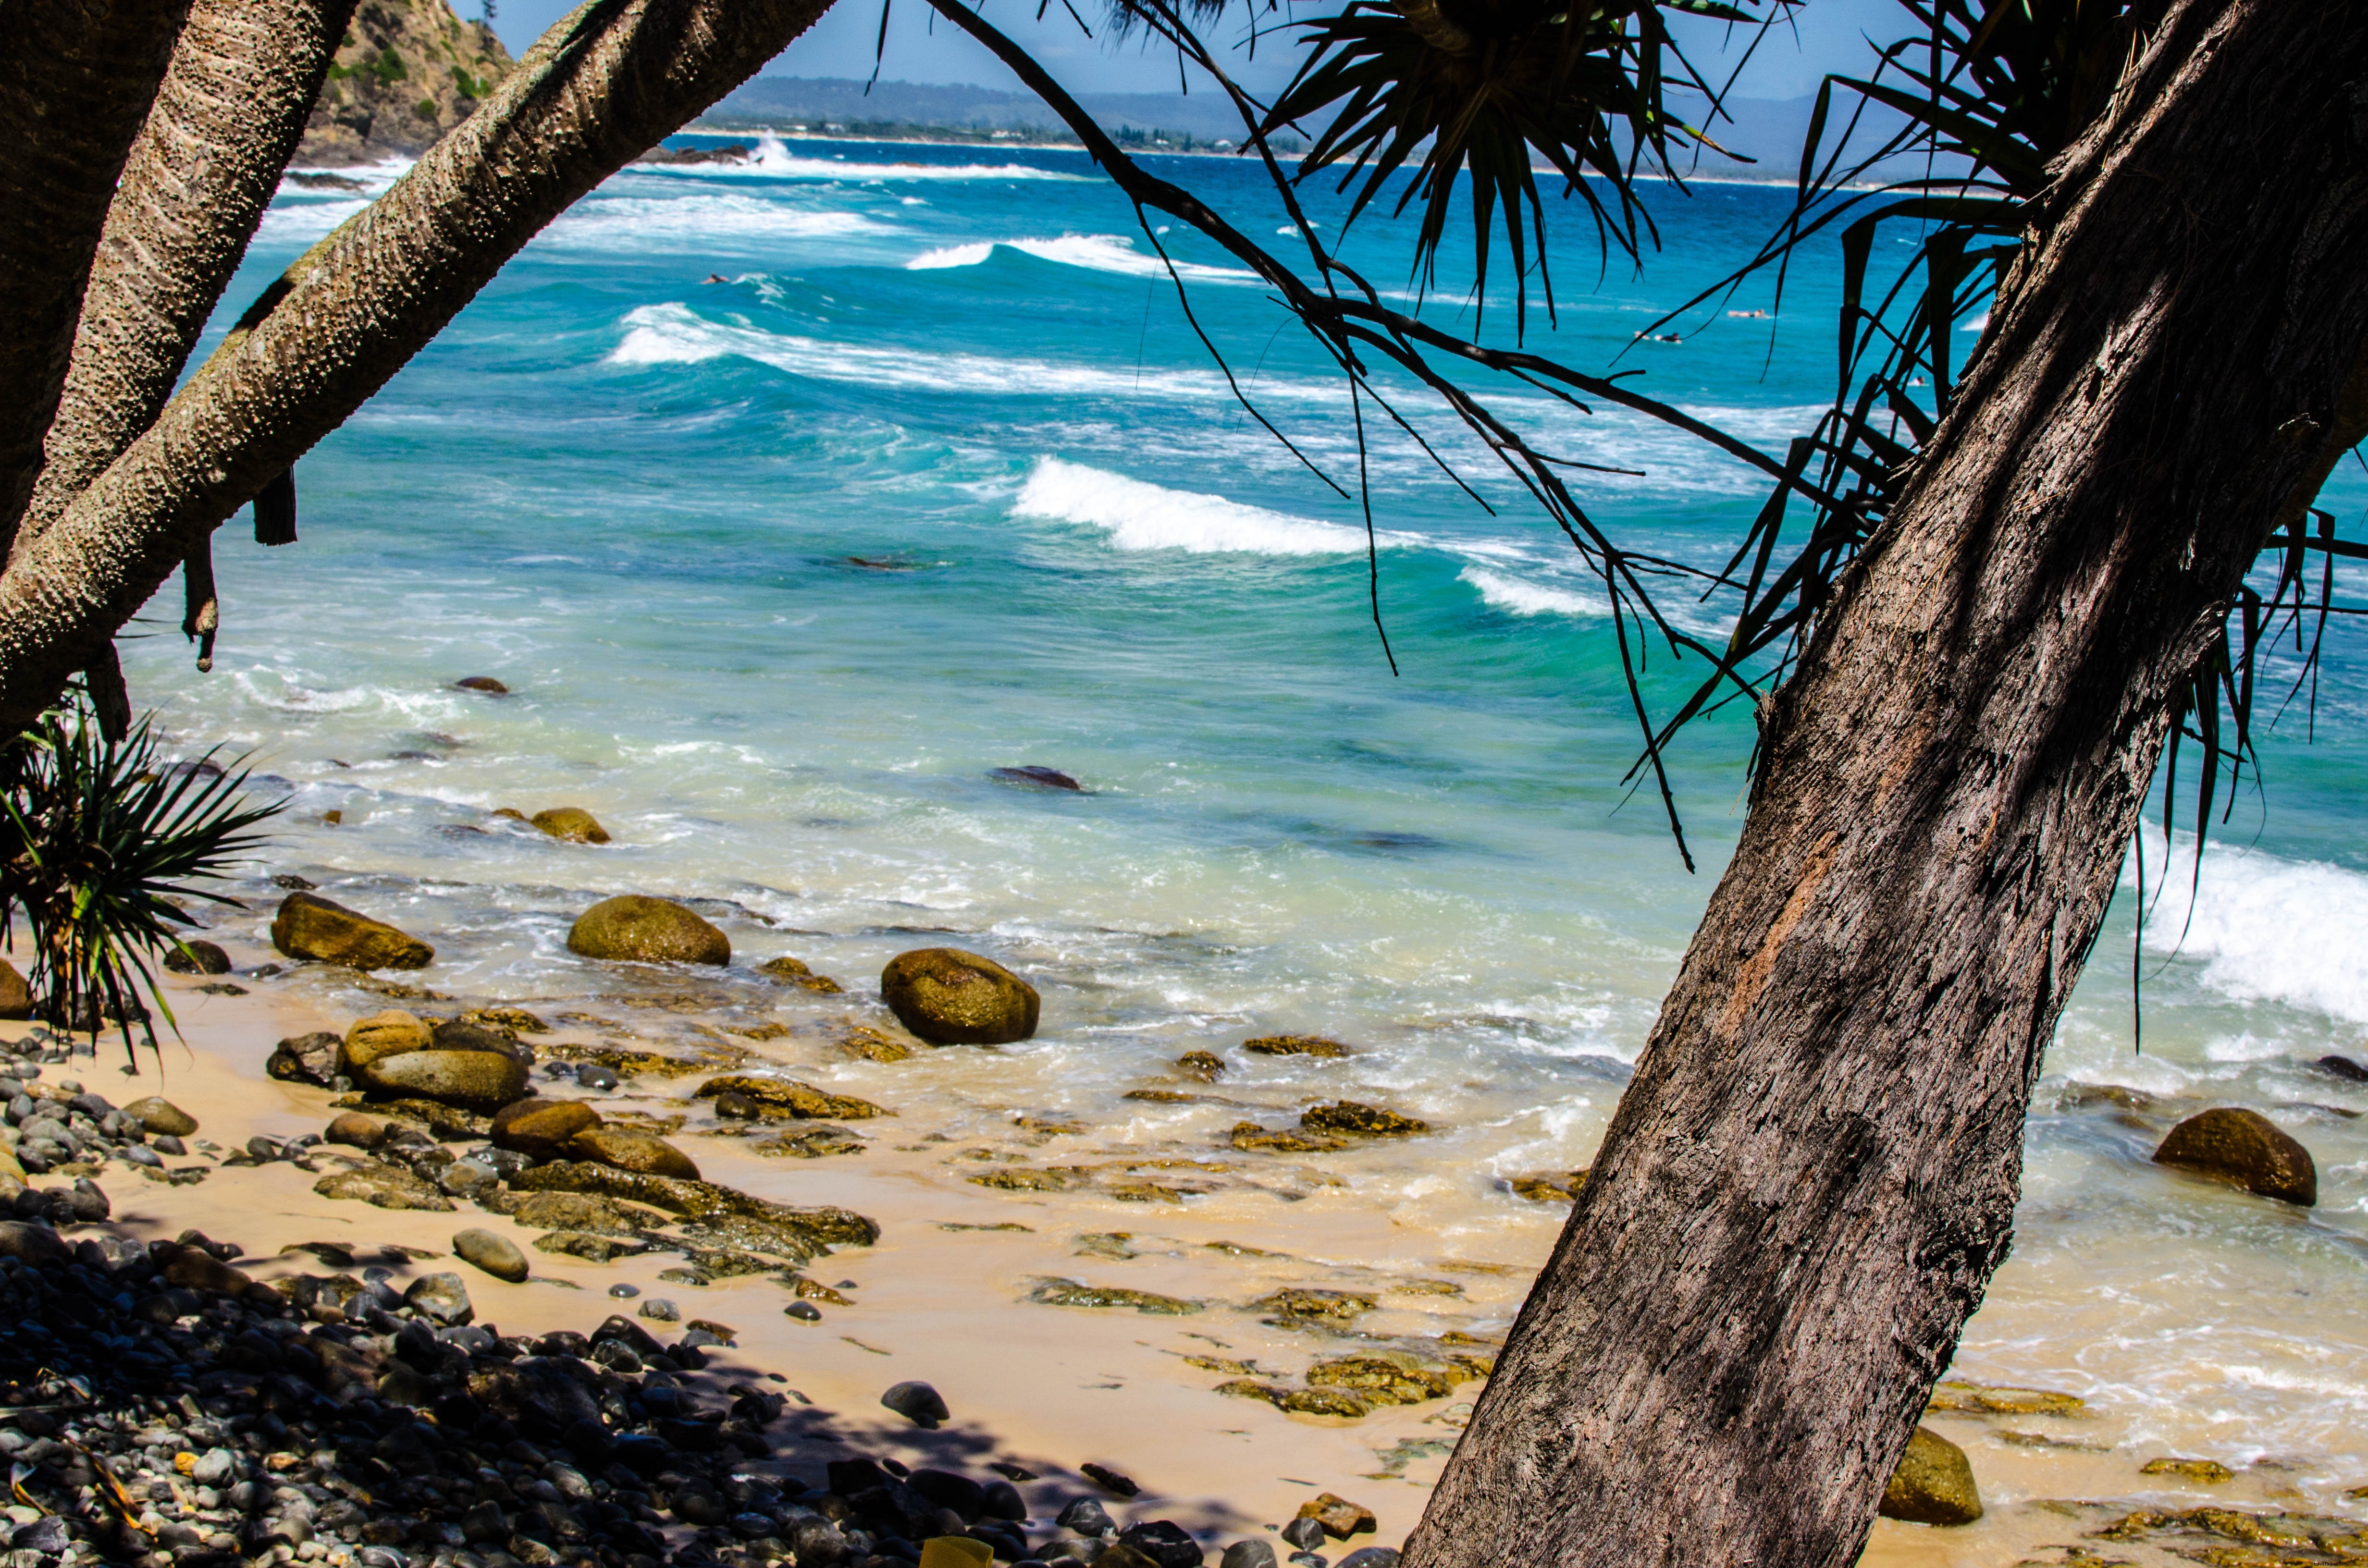 Ondas azuis rolam sobre seixos em uma foto de praia ladeada por palmeiras